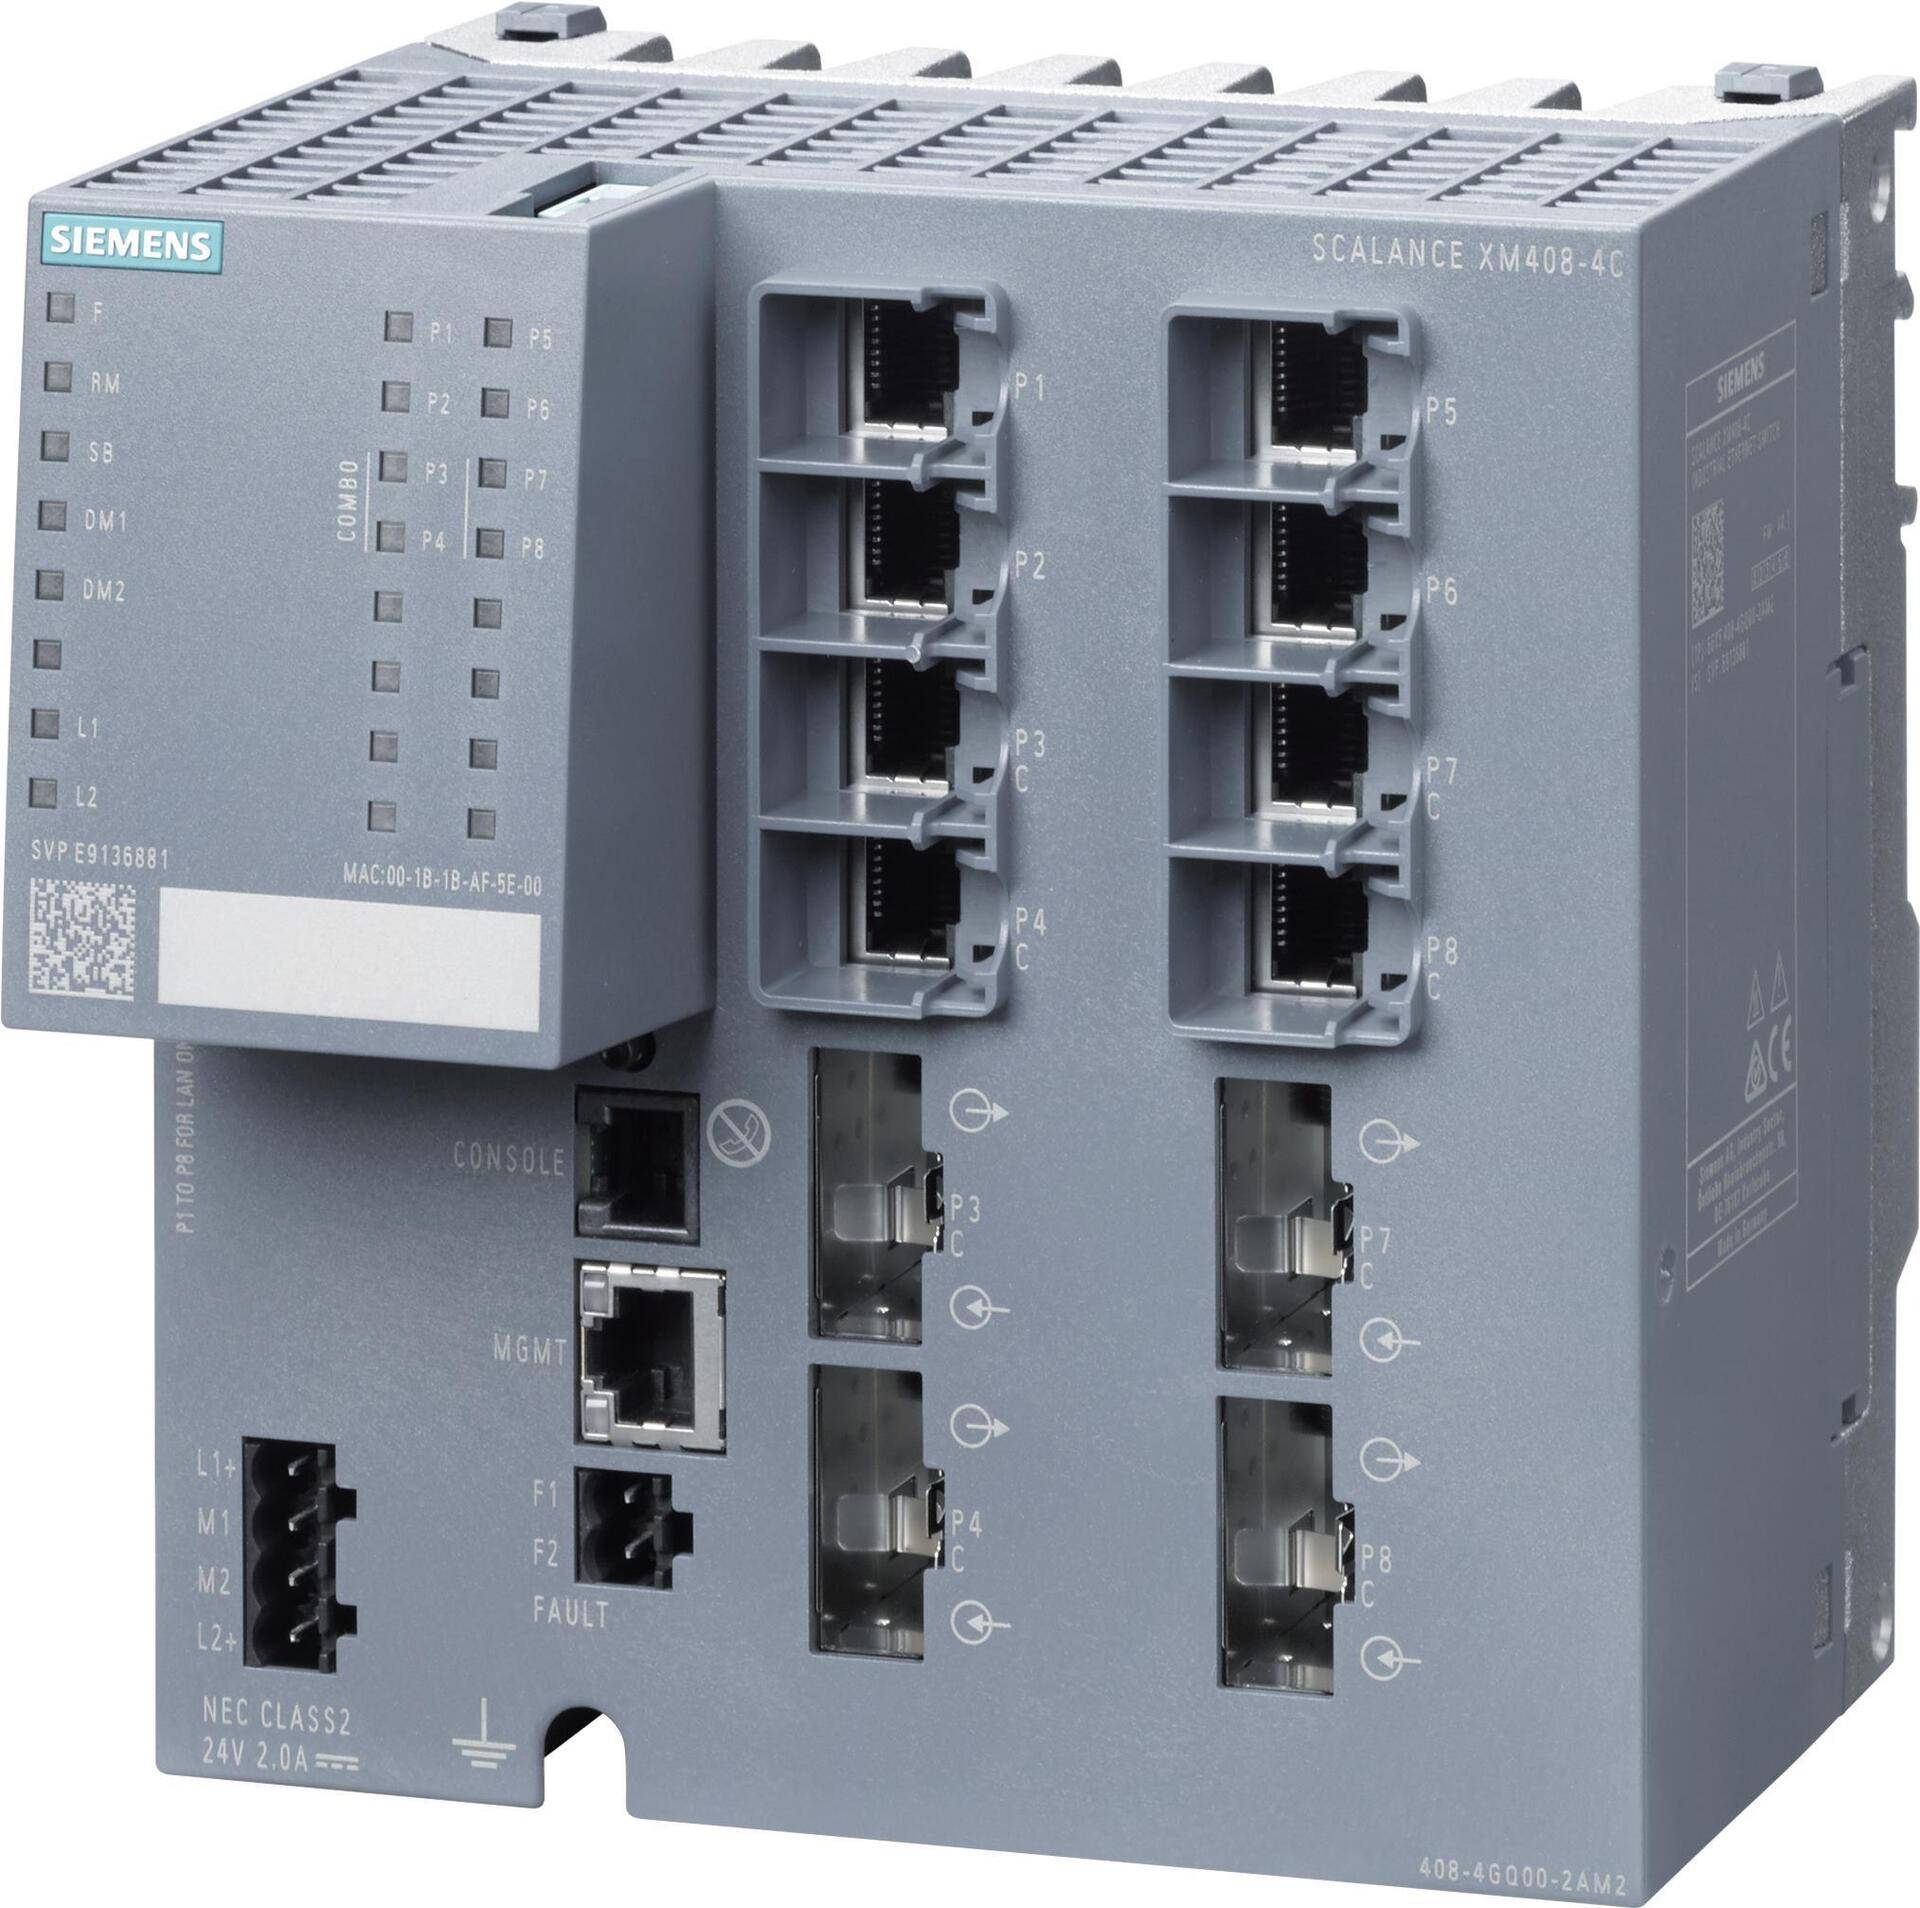 SIEM 6GK5408-4GQ00-2AM2 SCALANCE XM408-4 Switch, Layer 3 6GK5408-4GQ00-2AM2 (6GK54084GQ002AM2) von Siemens